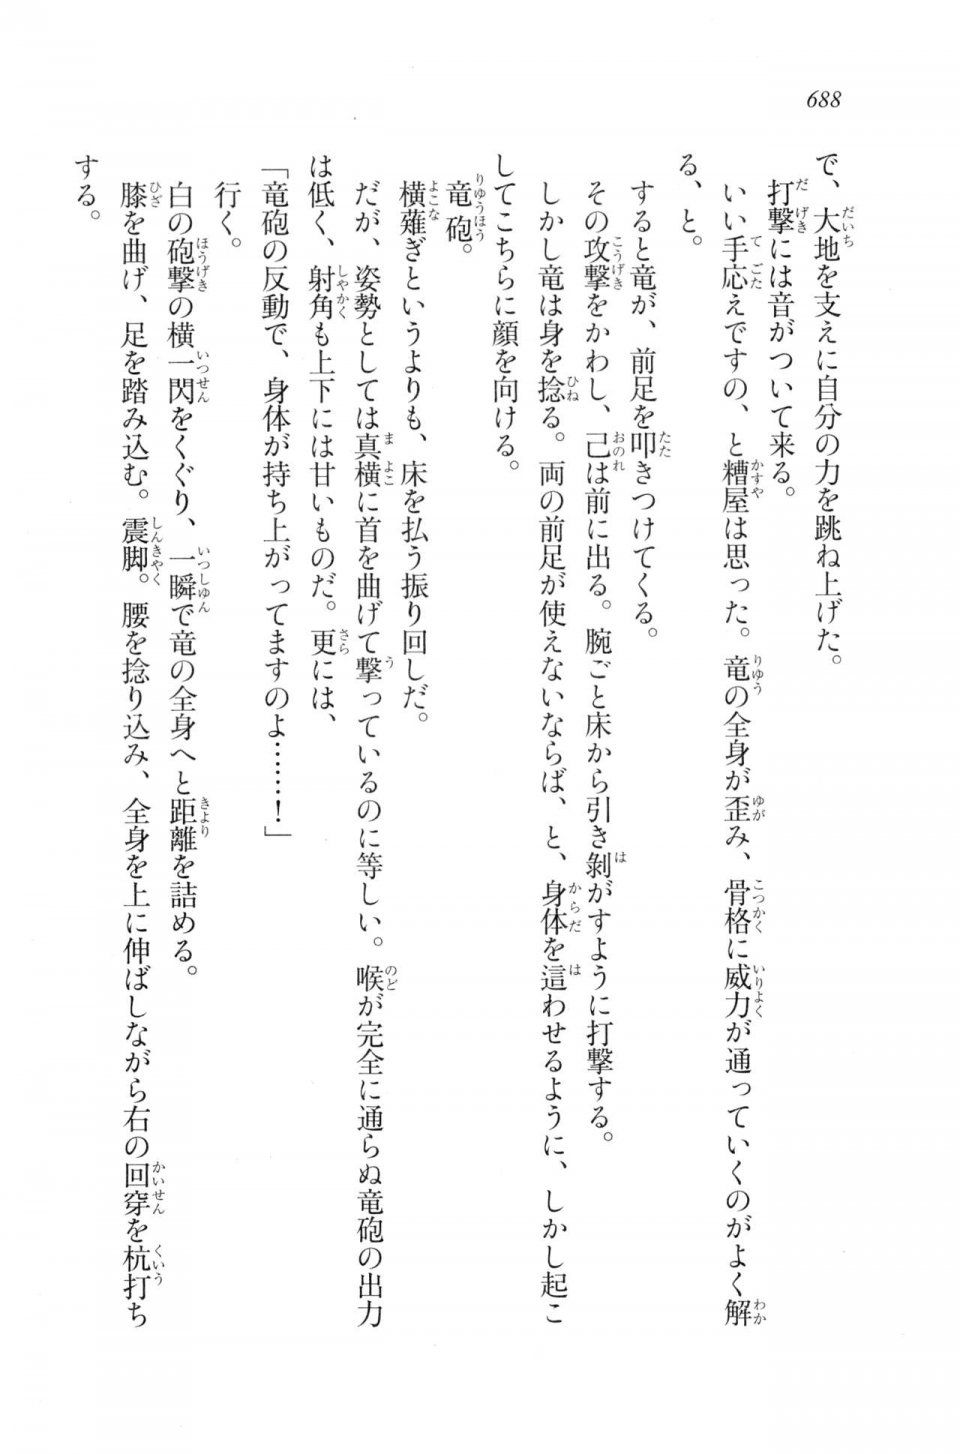 Kyoukai Senjou no Horizon LN Vol 20(8B) - Photo #688